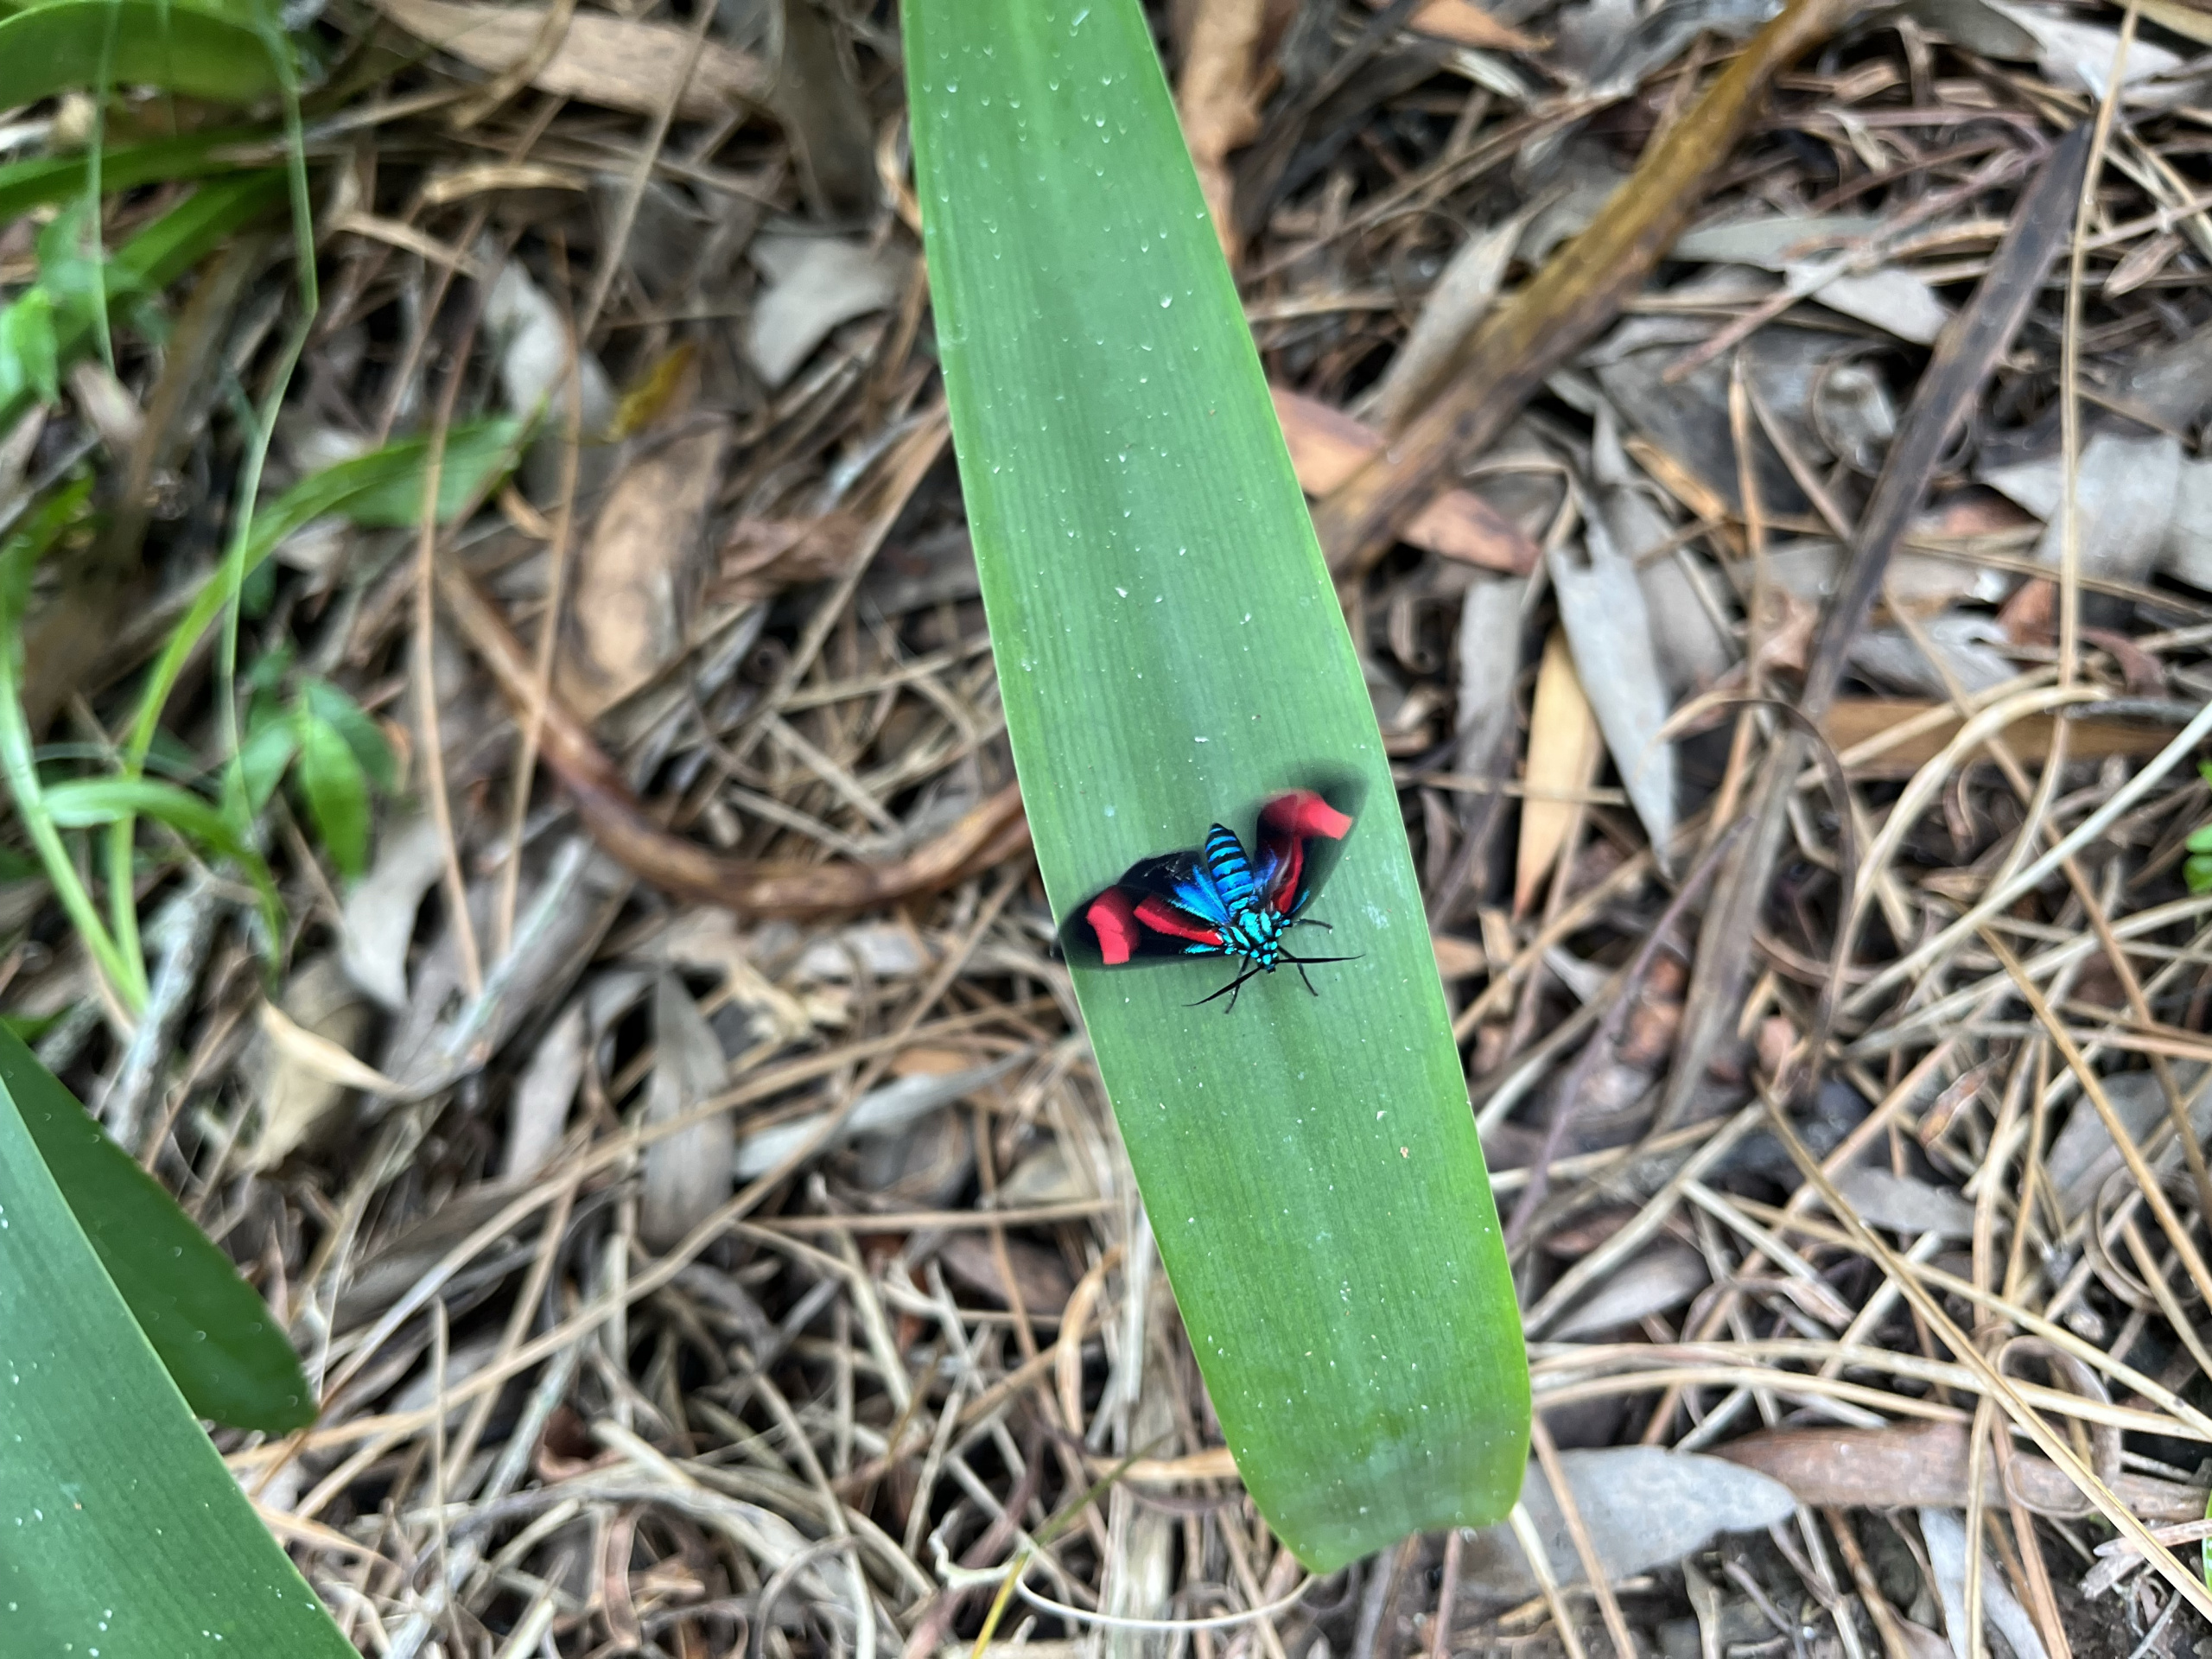 Polilla azul brillante con alas rojas sobre la hoja de un agapanto